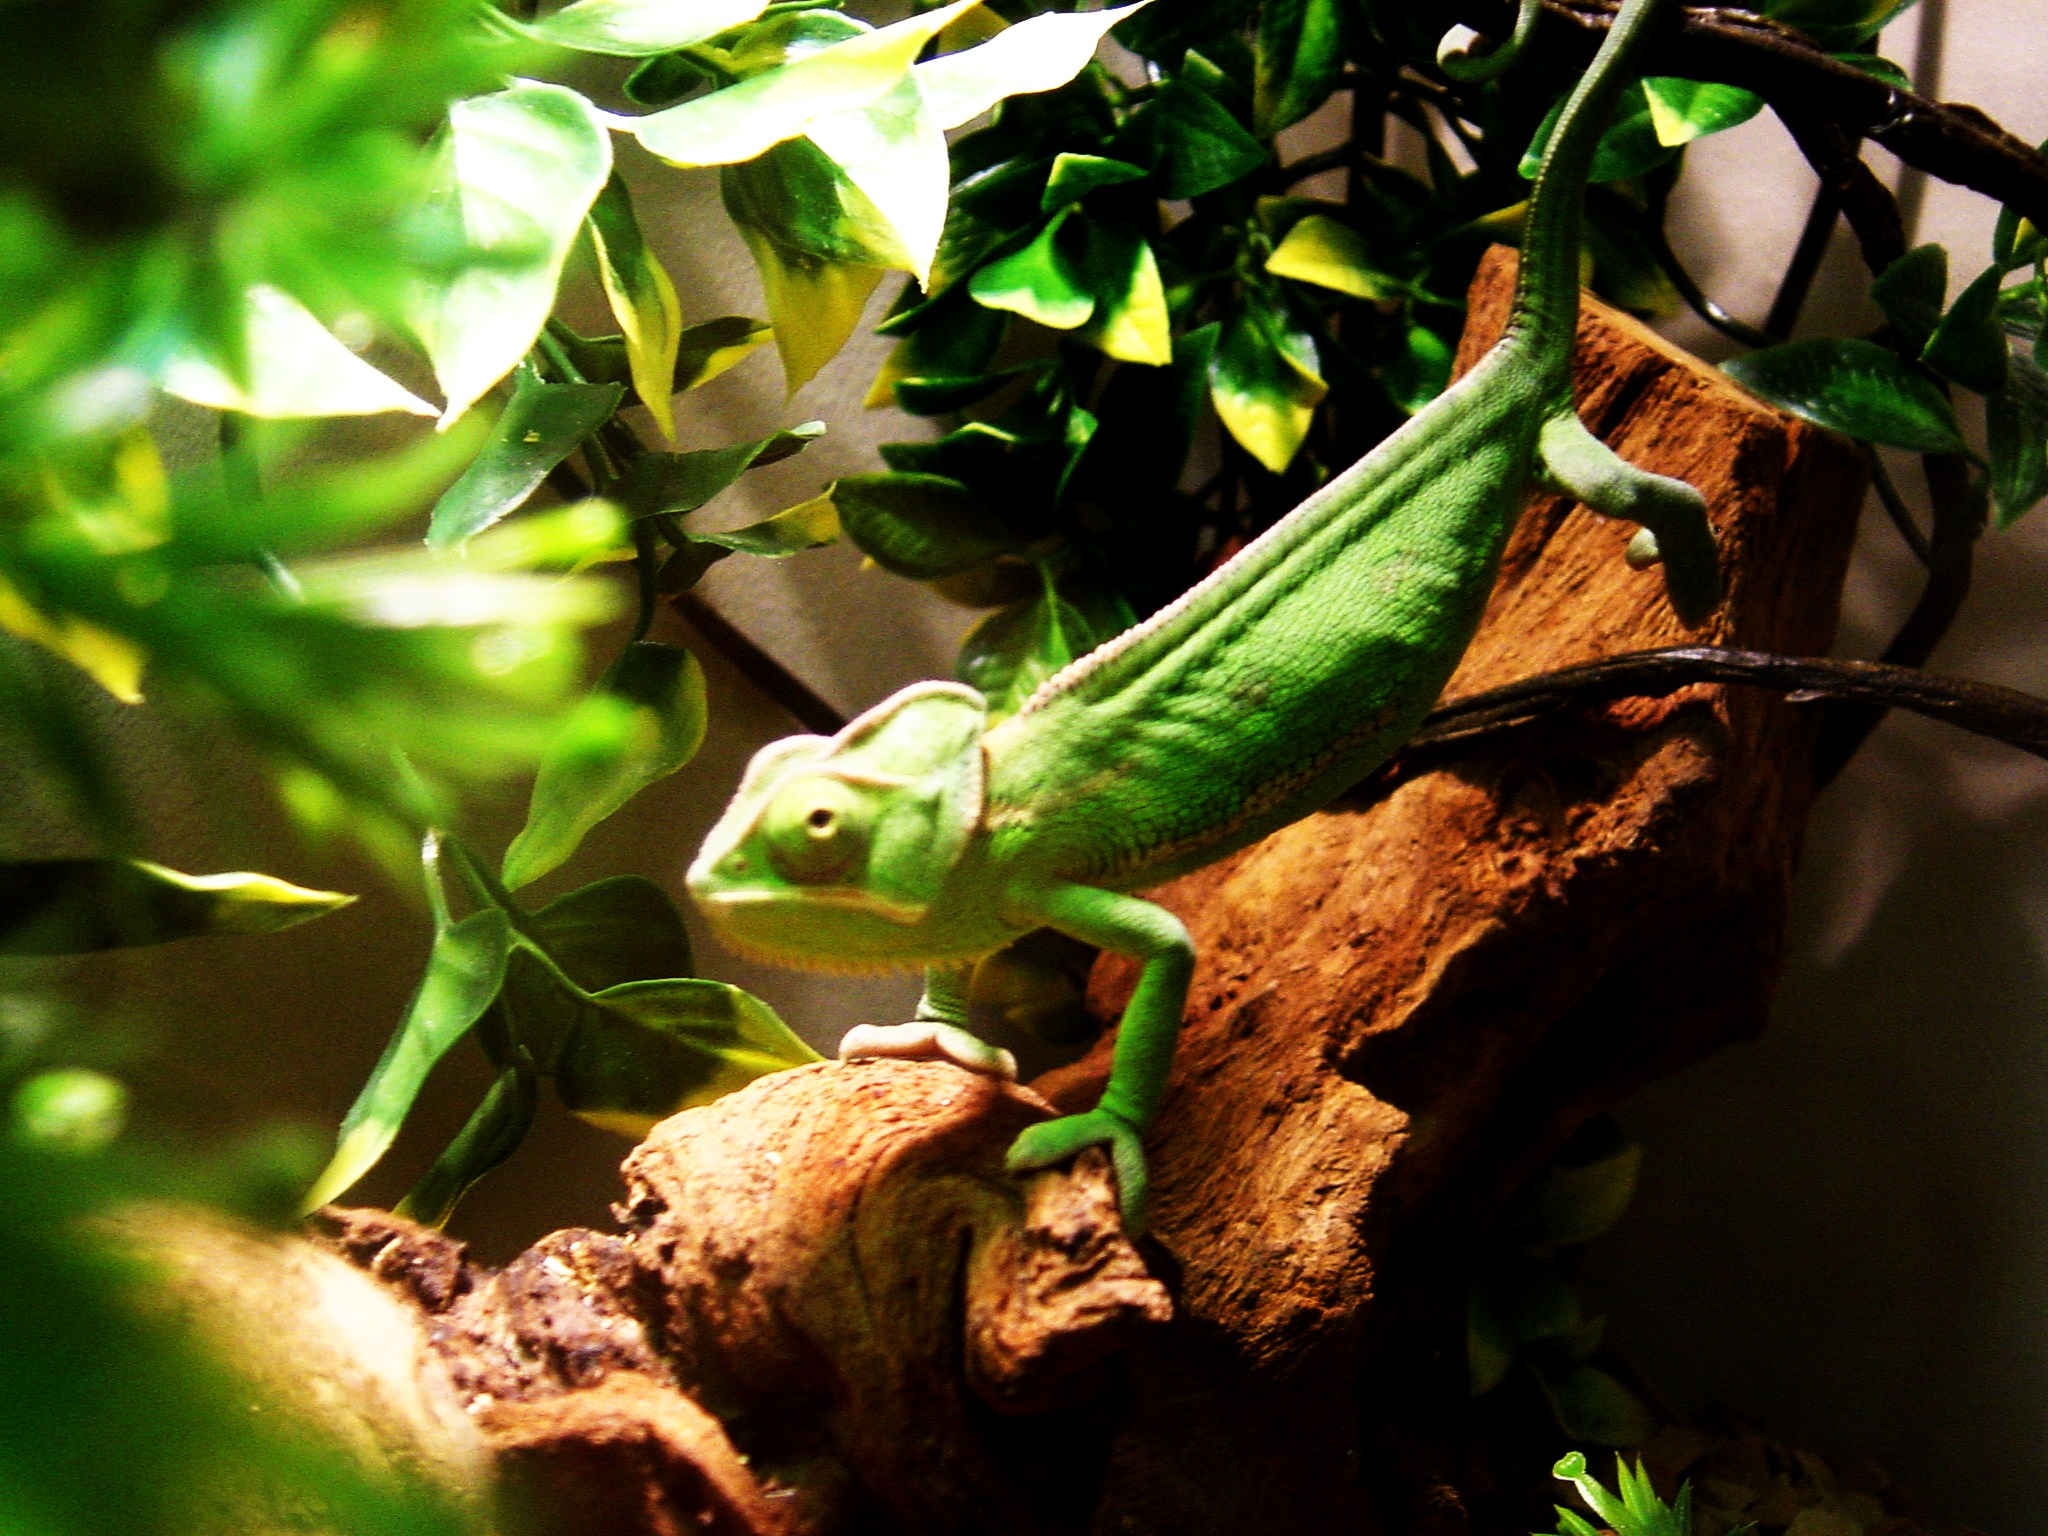 Veiled Chameleon Image 3